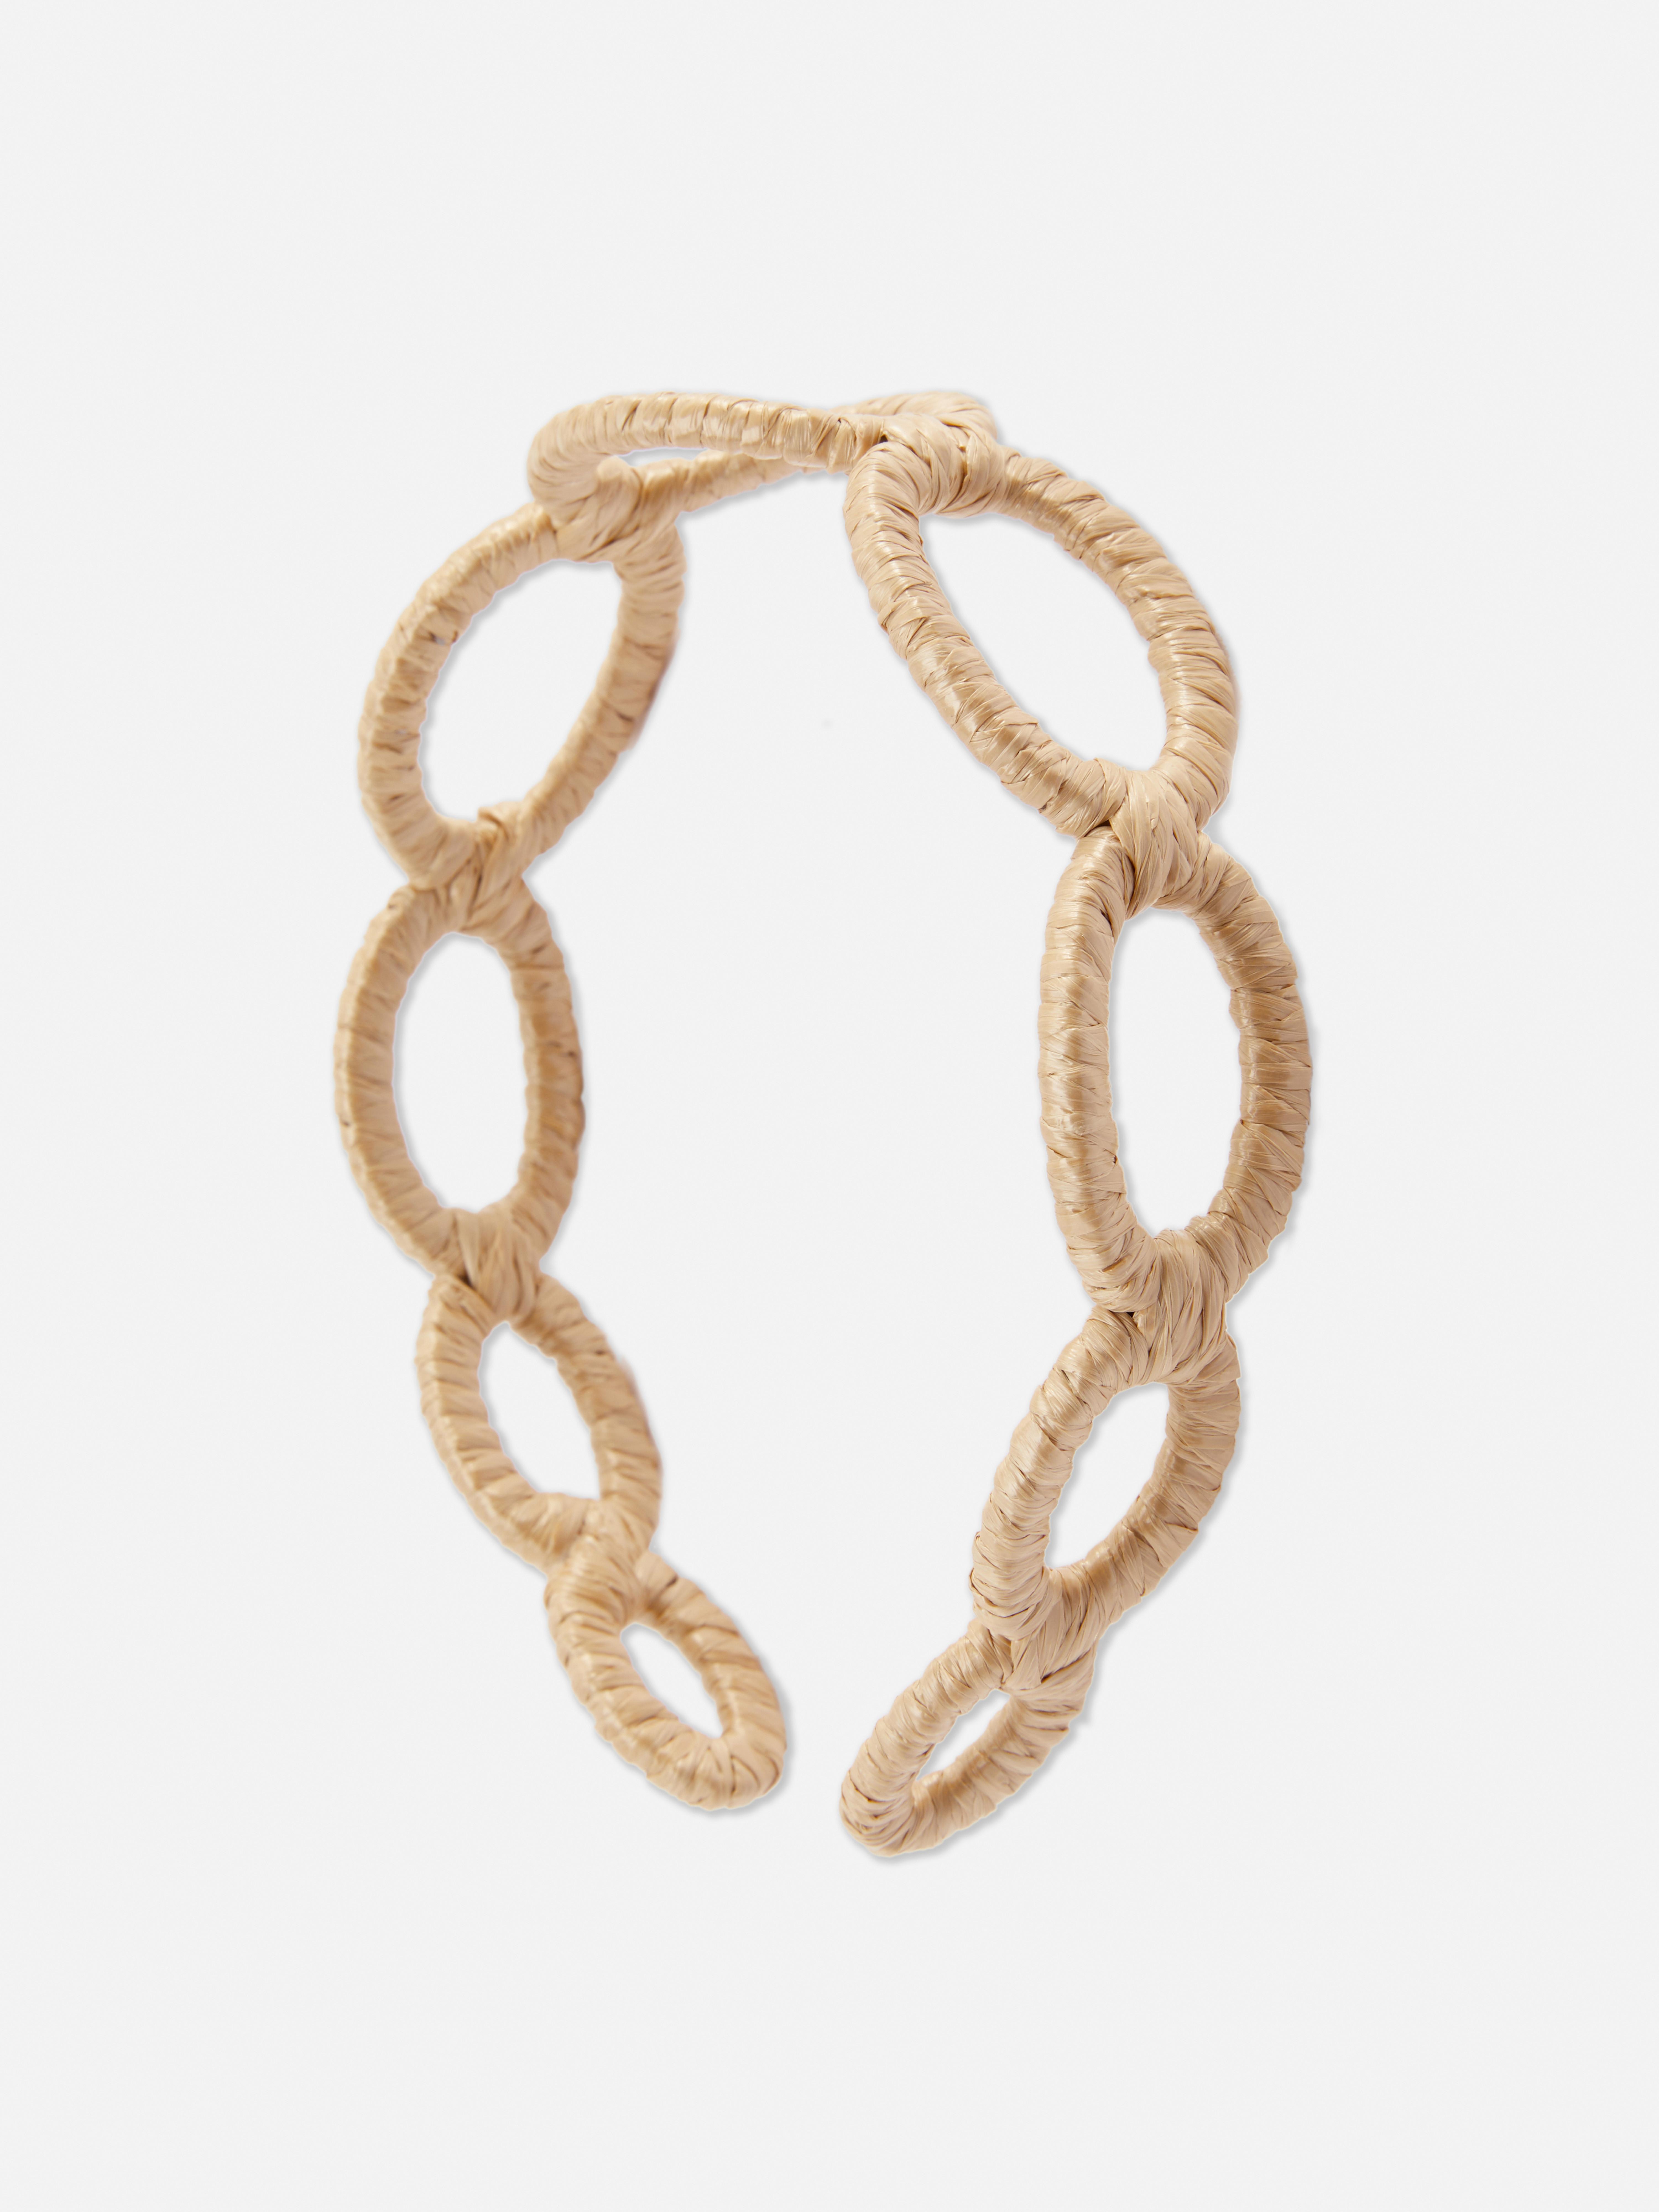 Haarband mit ovalen Ringen in Rafia-Optik